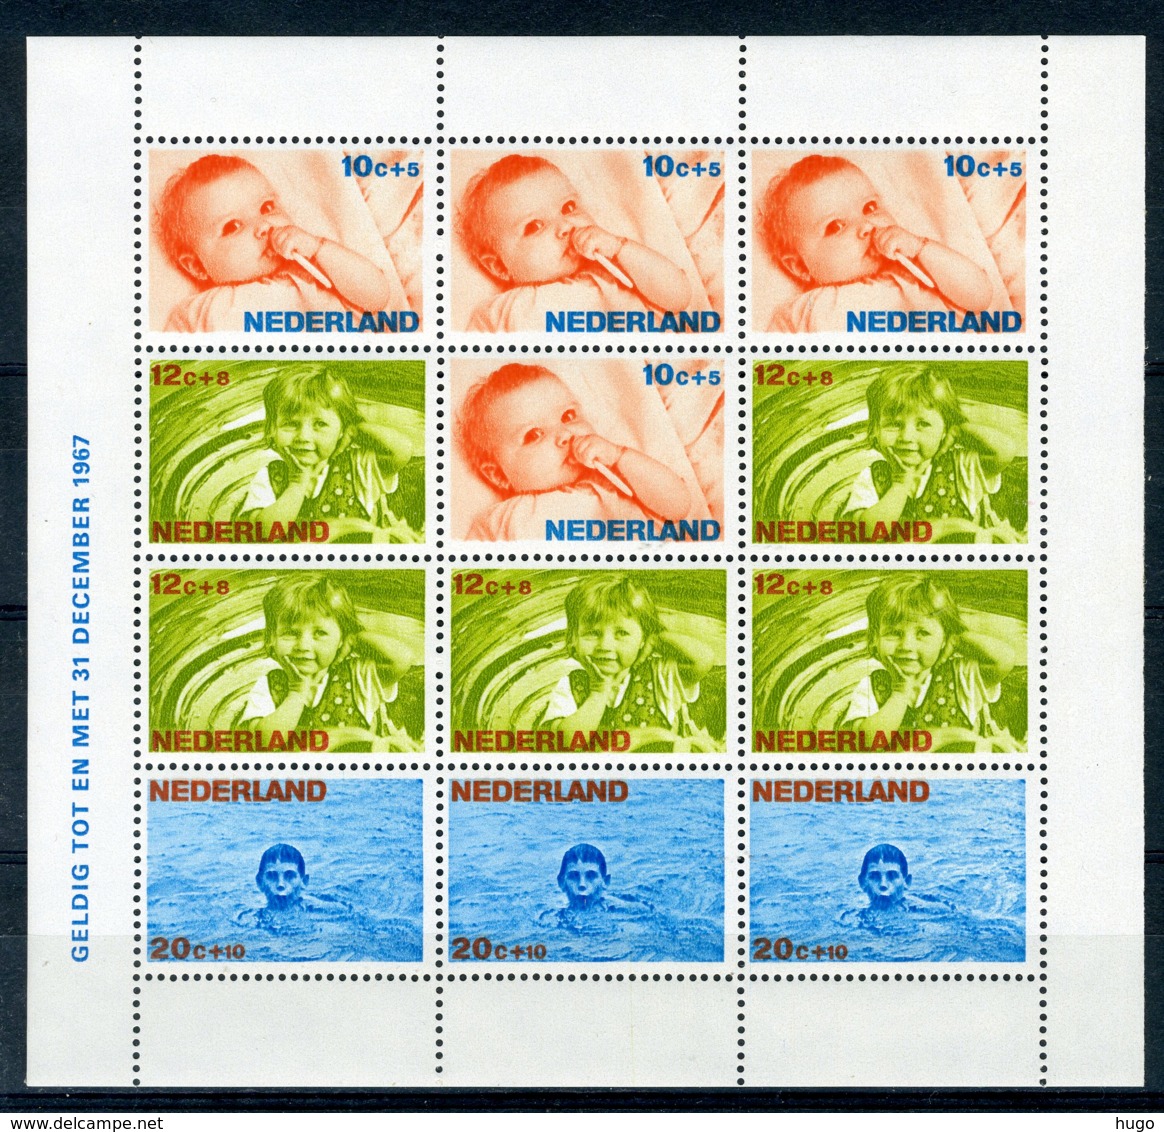 NEDERLAND 875 MNH** Blok 1966 - Kinderzegels, Levensstadia Kinderen - Bloks